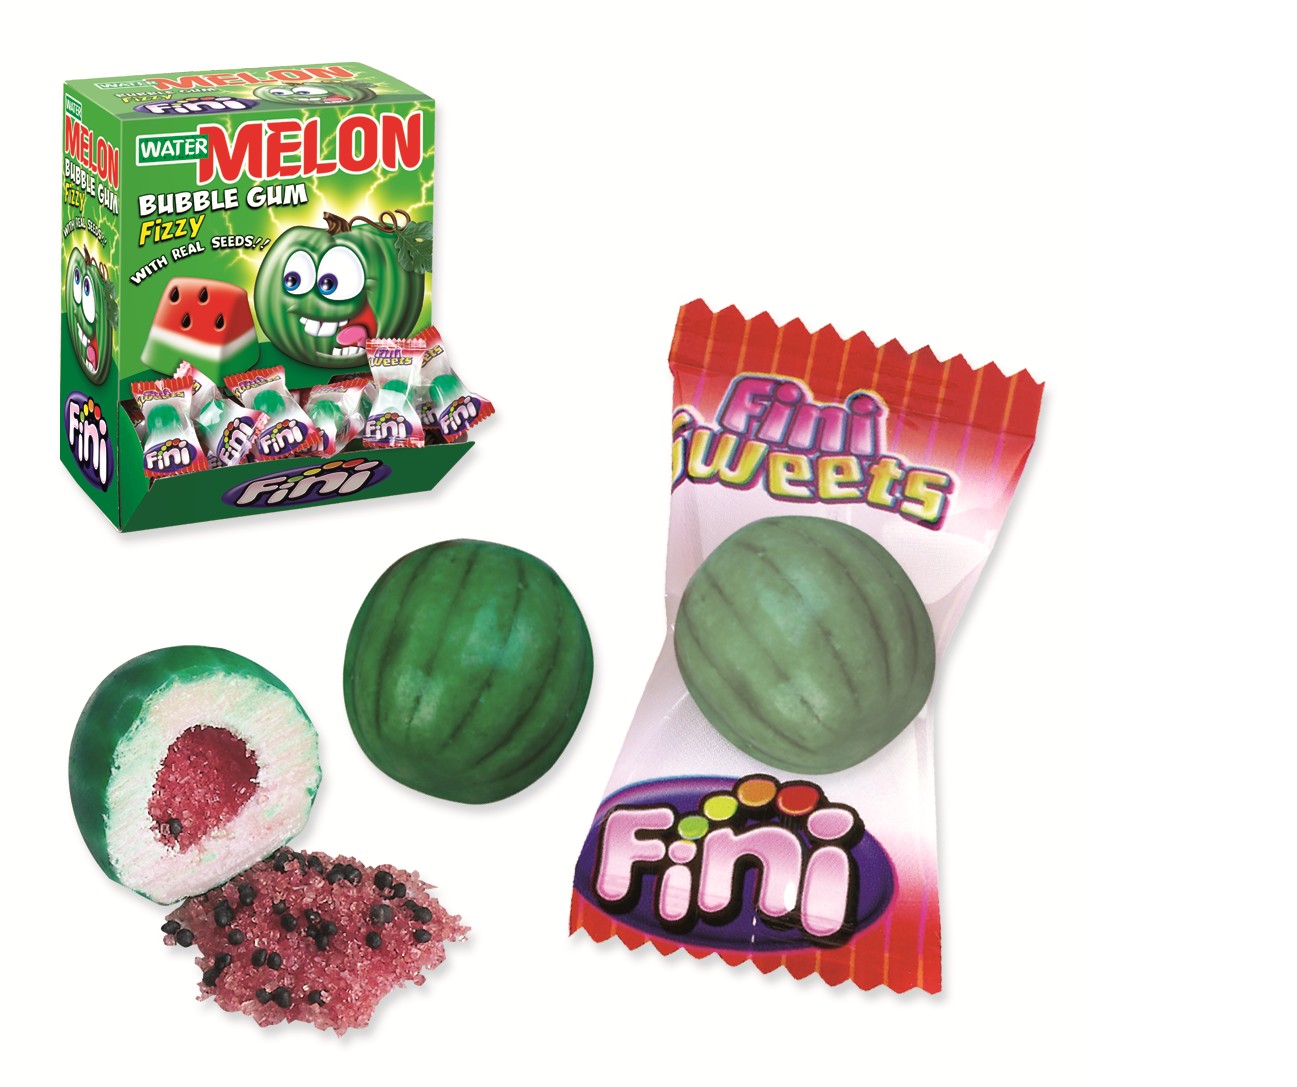 Chewing gum Fini Pastèque, bonbon melon,bubble gum pastèque,watermelon